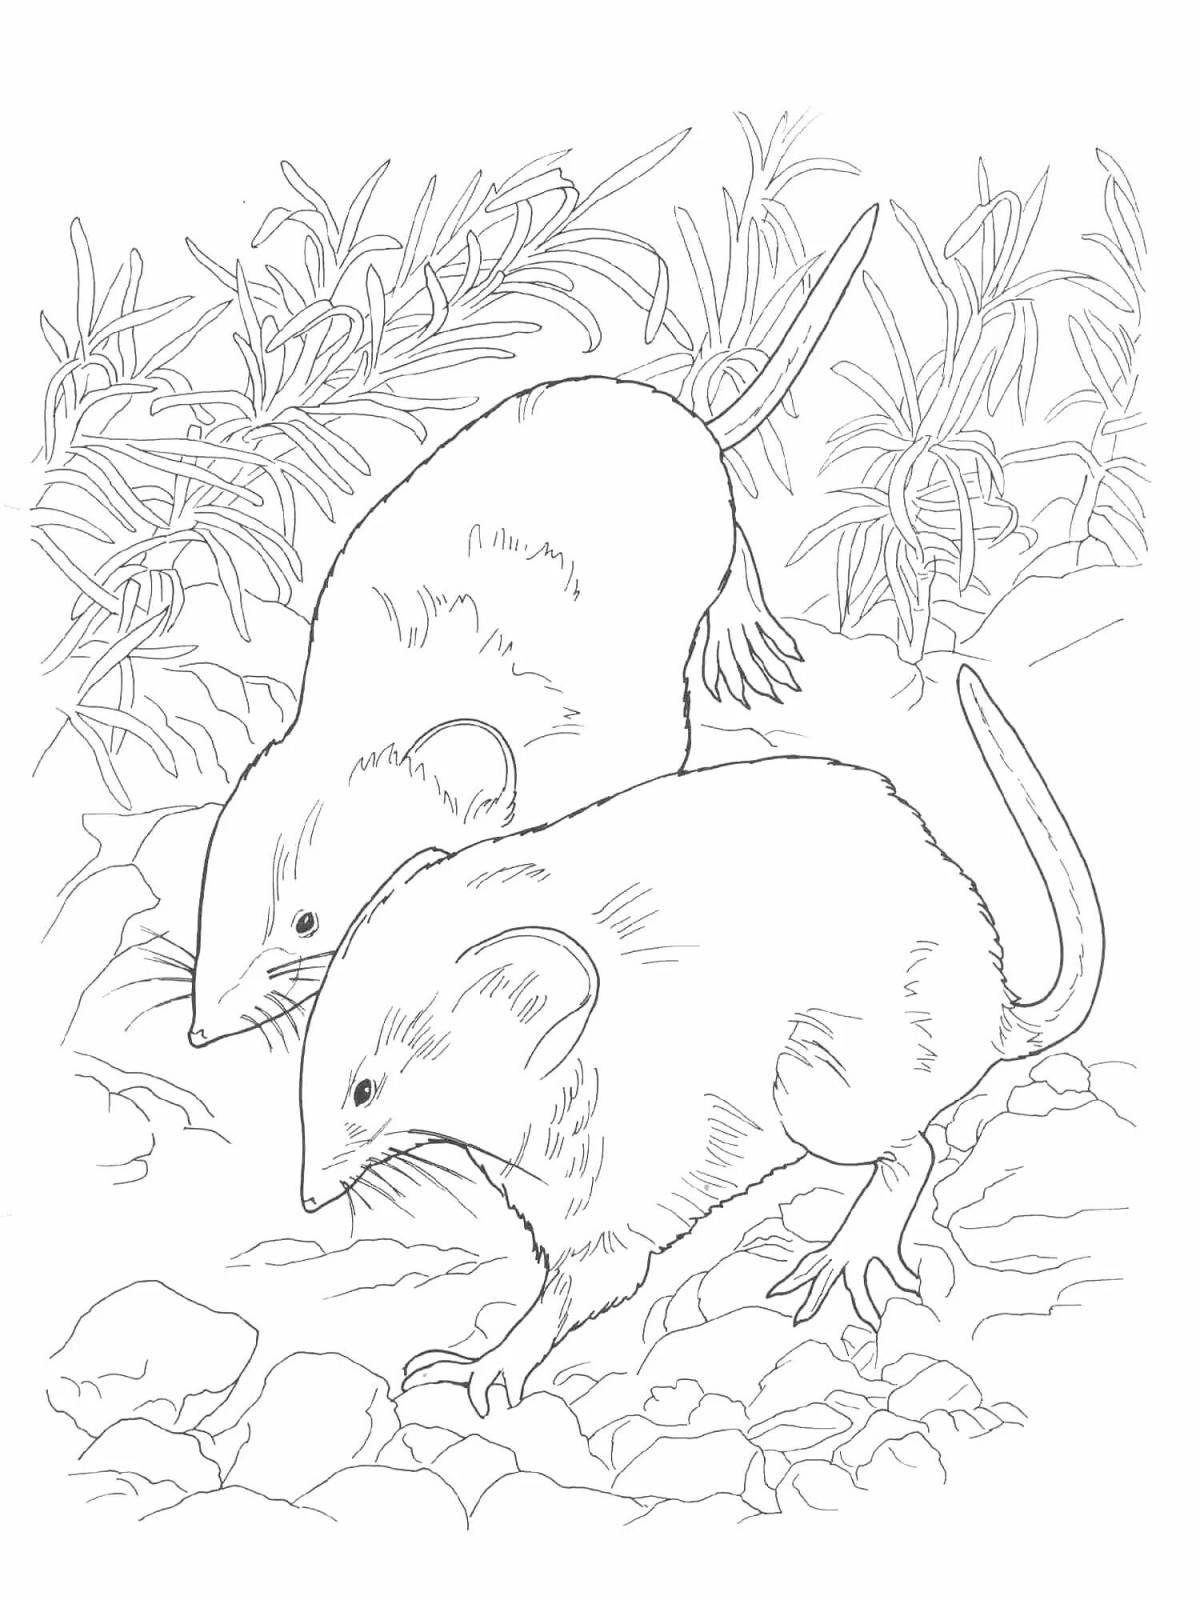 Юмористическая раскраска мышь-полевка